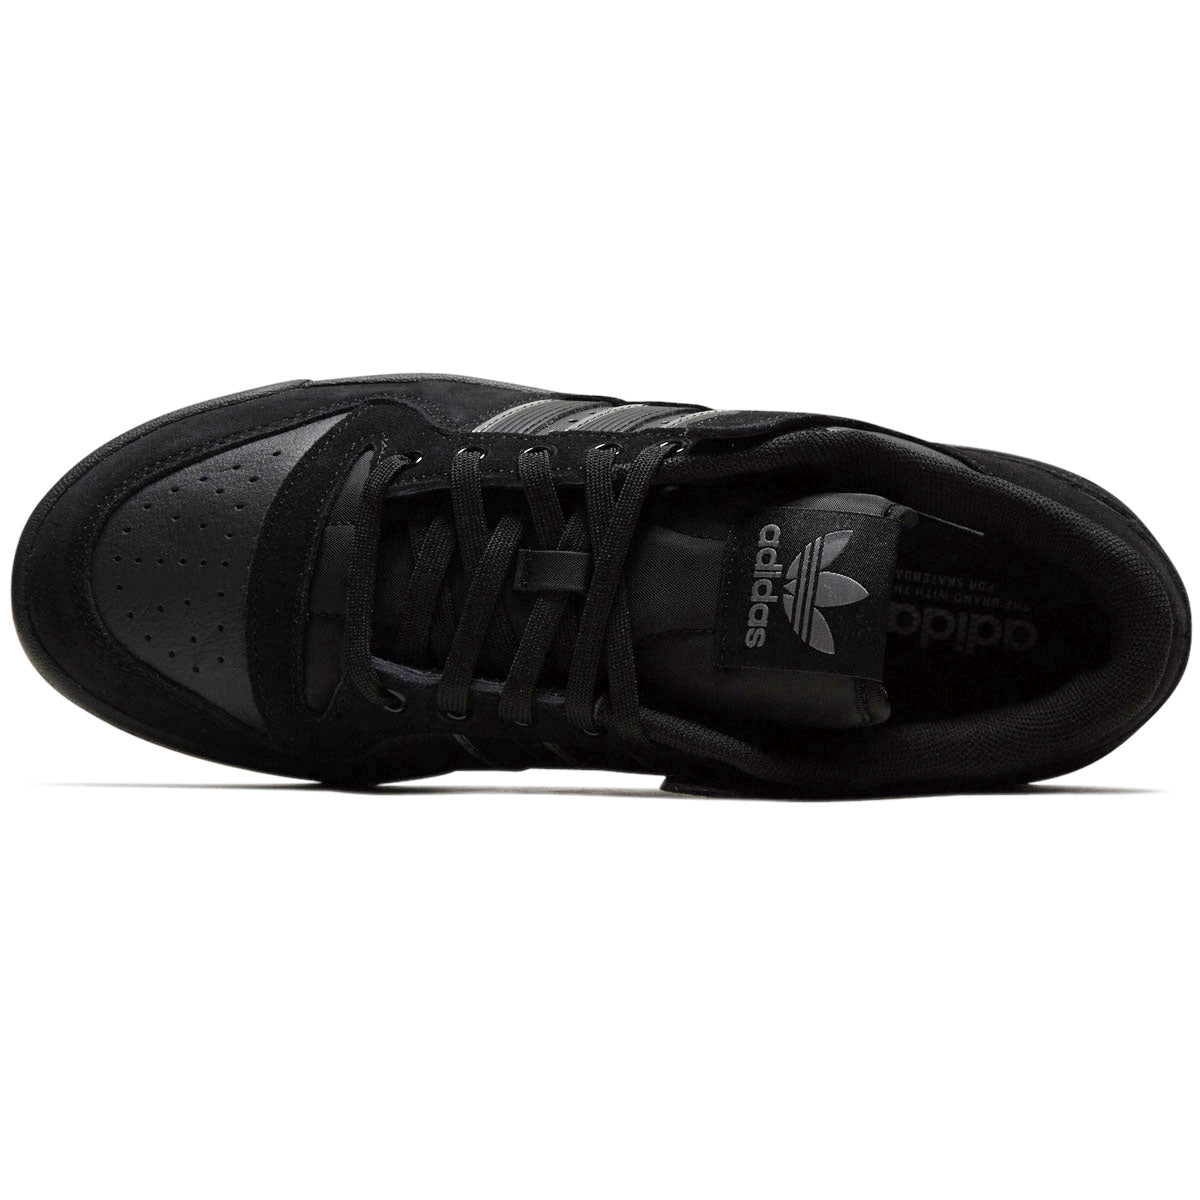 Adidas Forum 84 Low Adv Shoes - Core Black/Carbon/Grey image 3